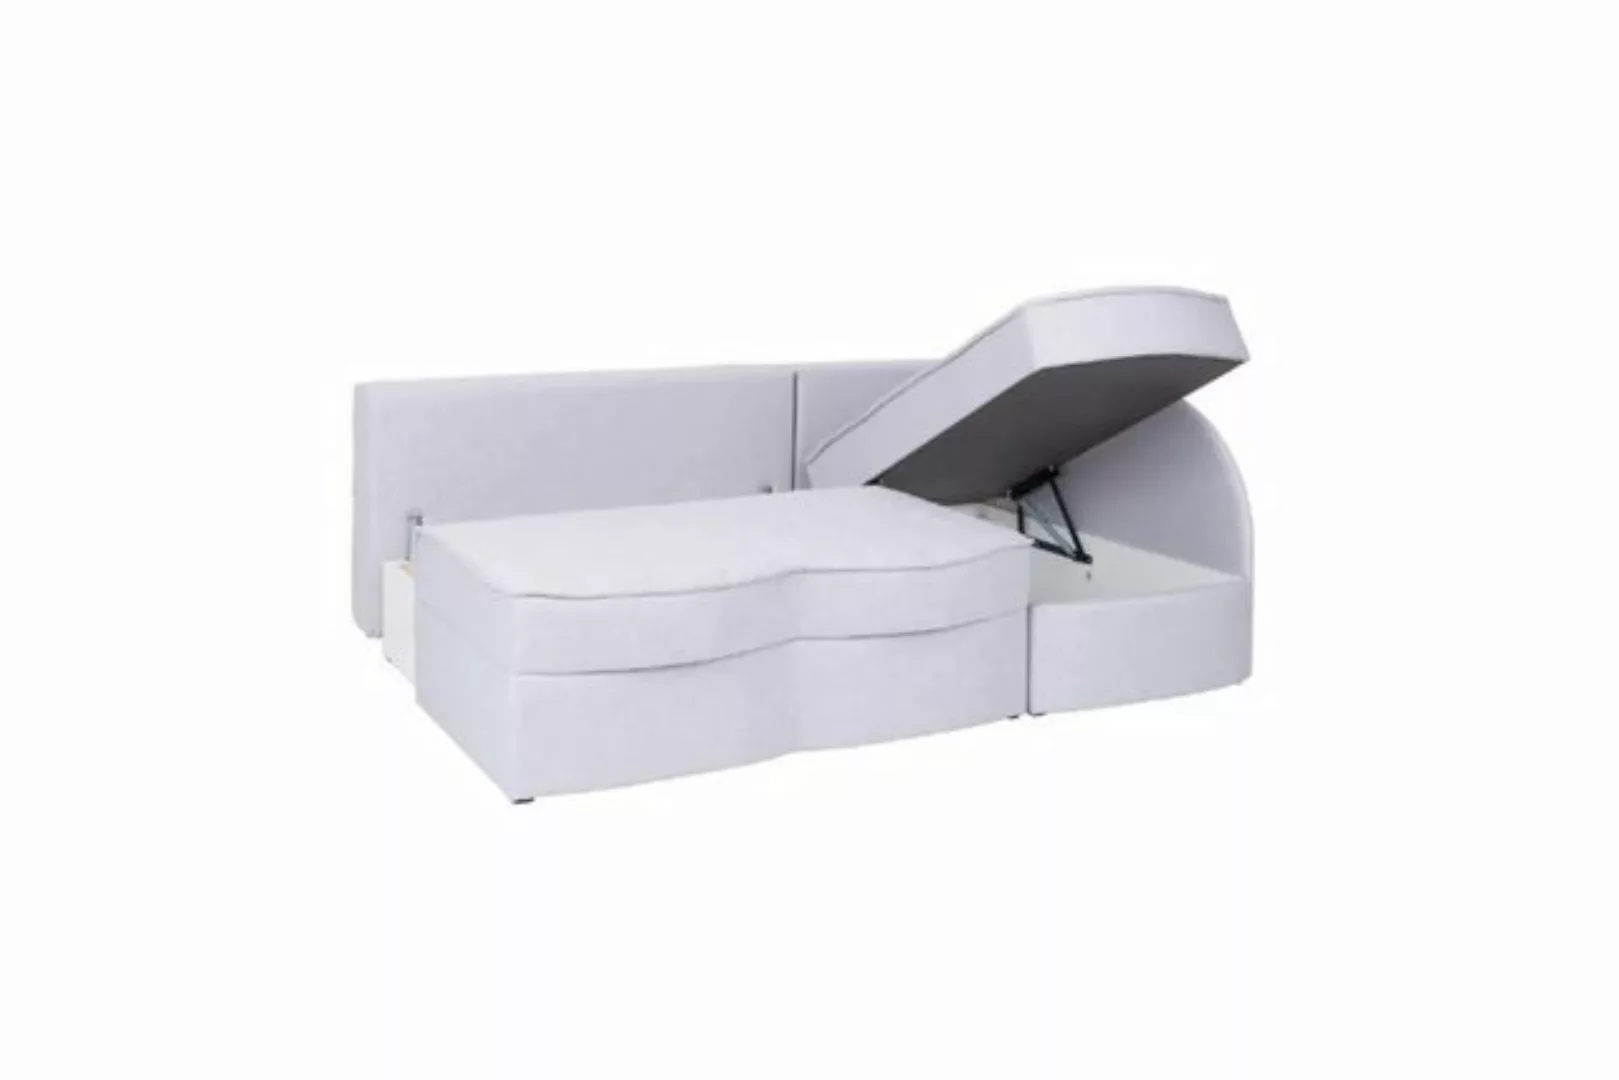 DB-Möbel Ecksofa mit Schlaffunktion " KALIA" - Sofa vom Hersteller günstig online kaufen